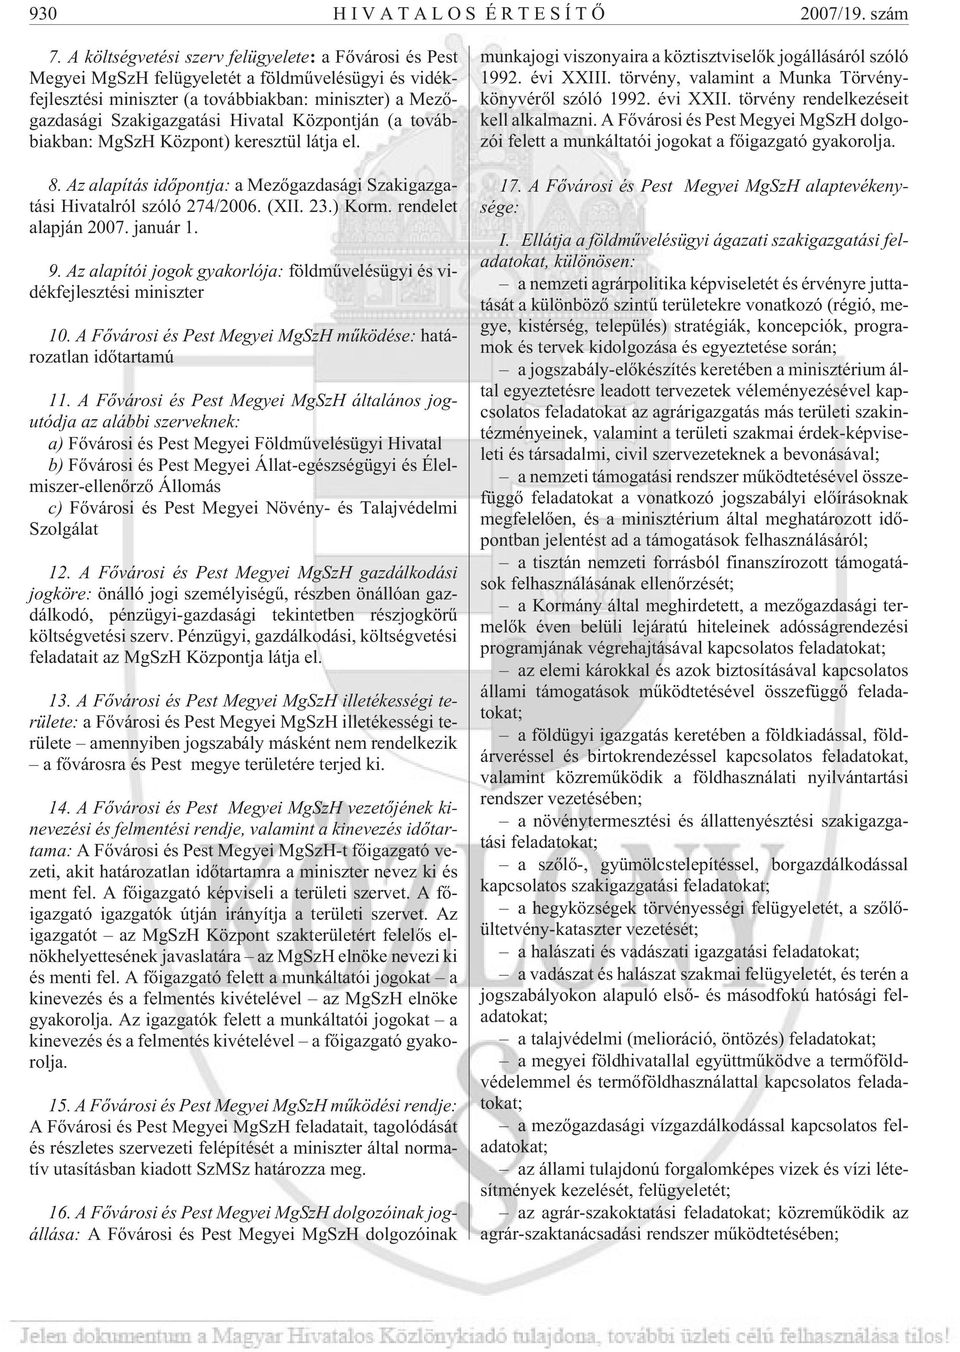 Központján (a továbbiakban: MgSzH Központ) keresztül látja el. 8. Az alapítás idõpontja: a Mezõgazdasági Szakigazgatási Hivatalról szóló 274/2006. (XII. 23.) Korm. rendelet alapján 2007. január 1. 9.